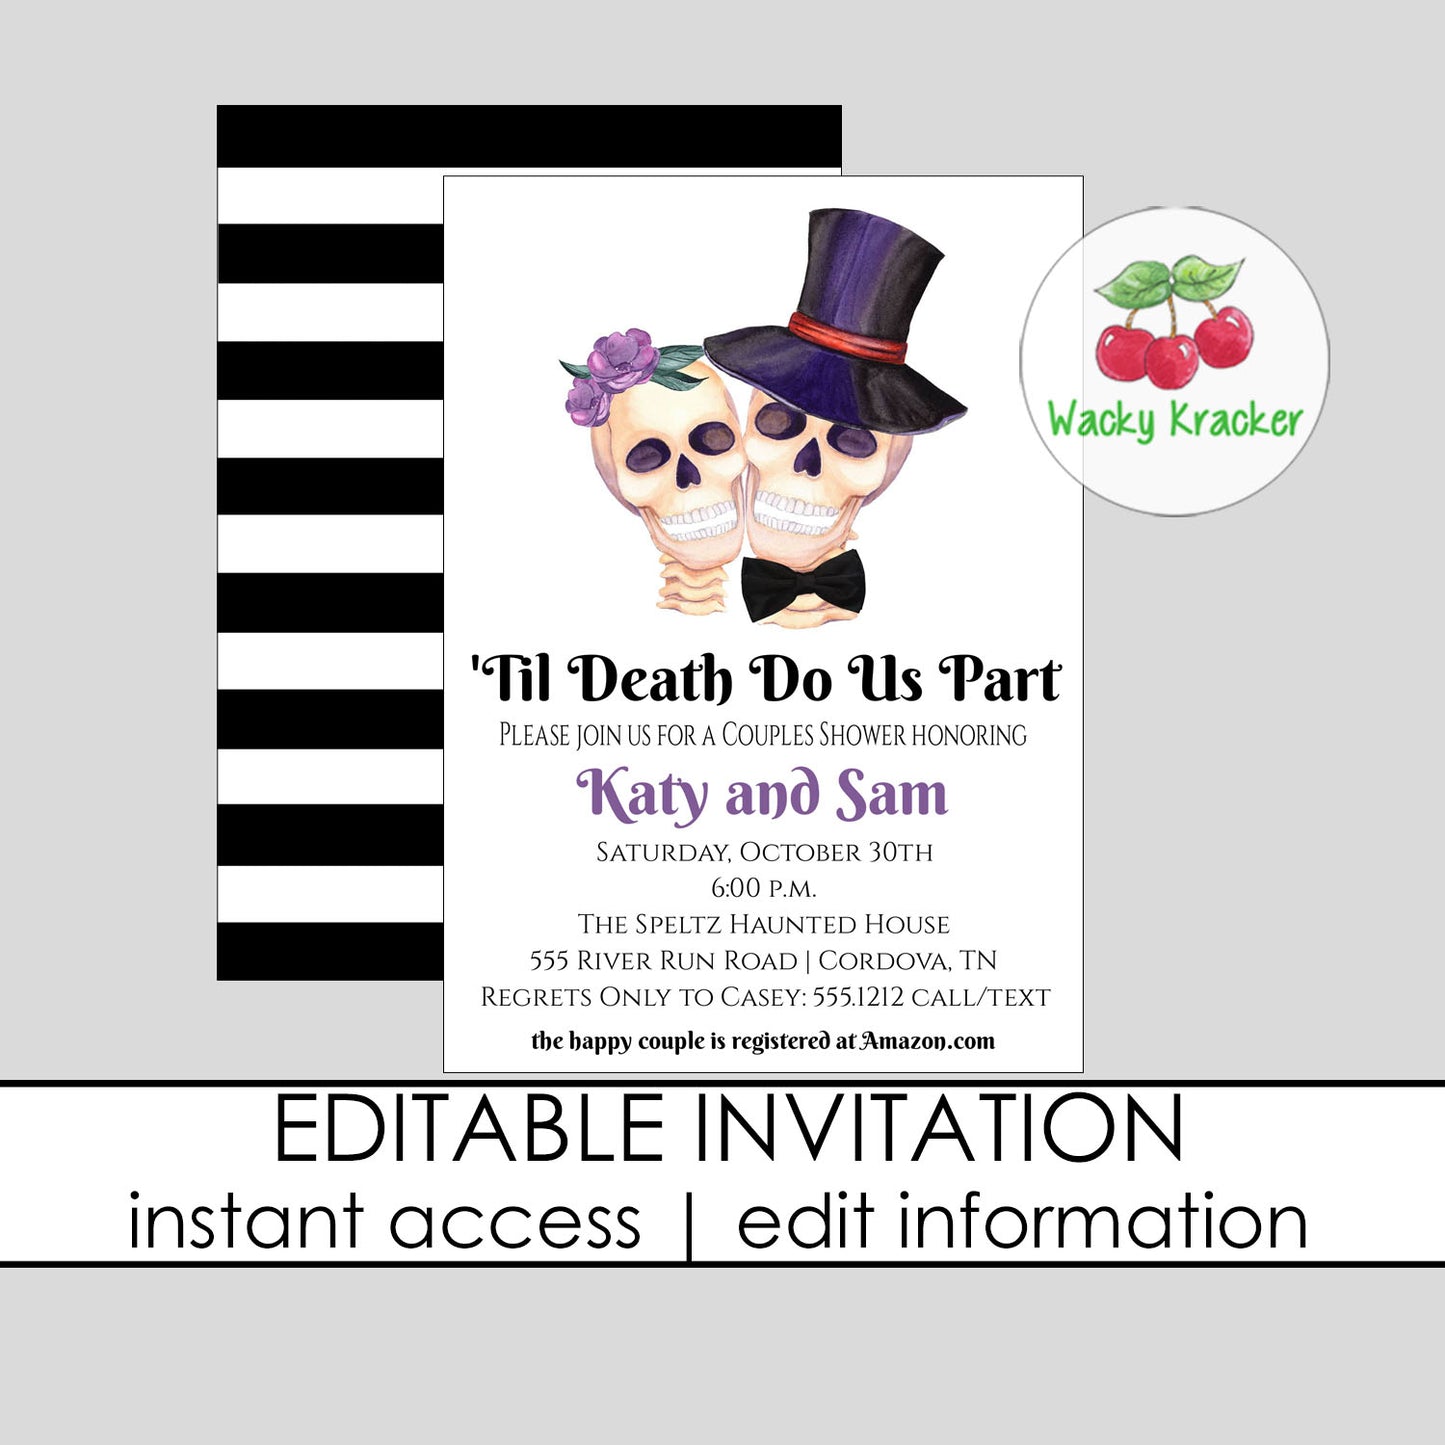 Til Death Do Us Part Invitation